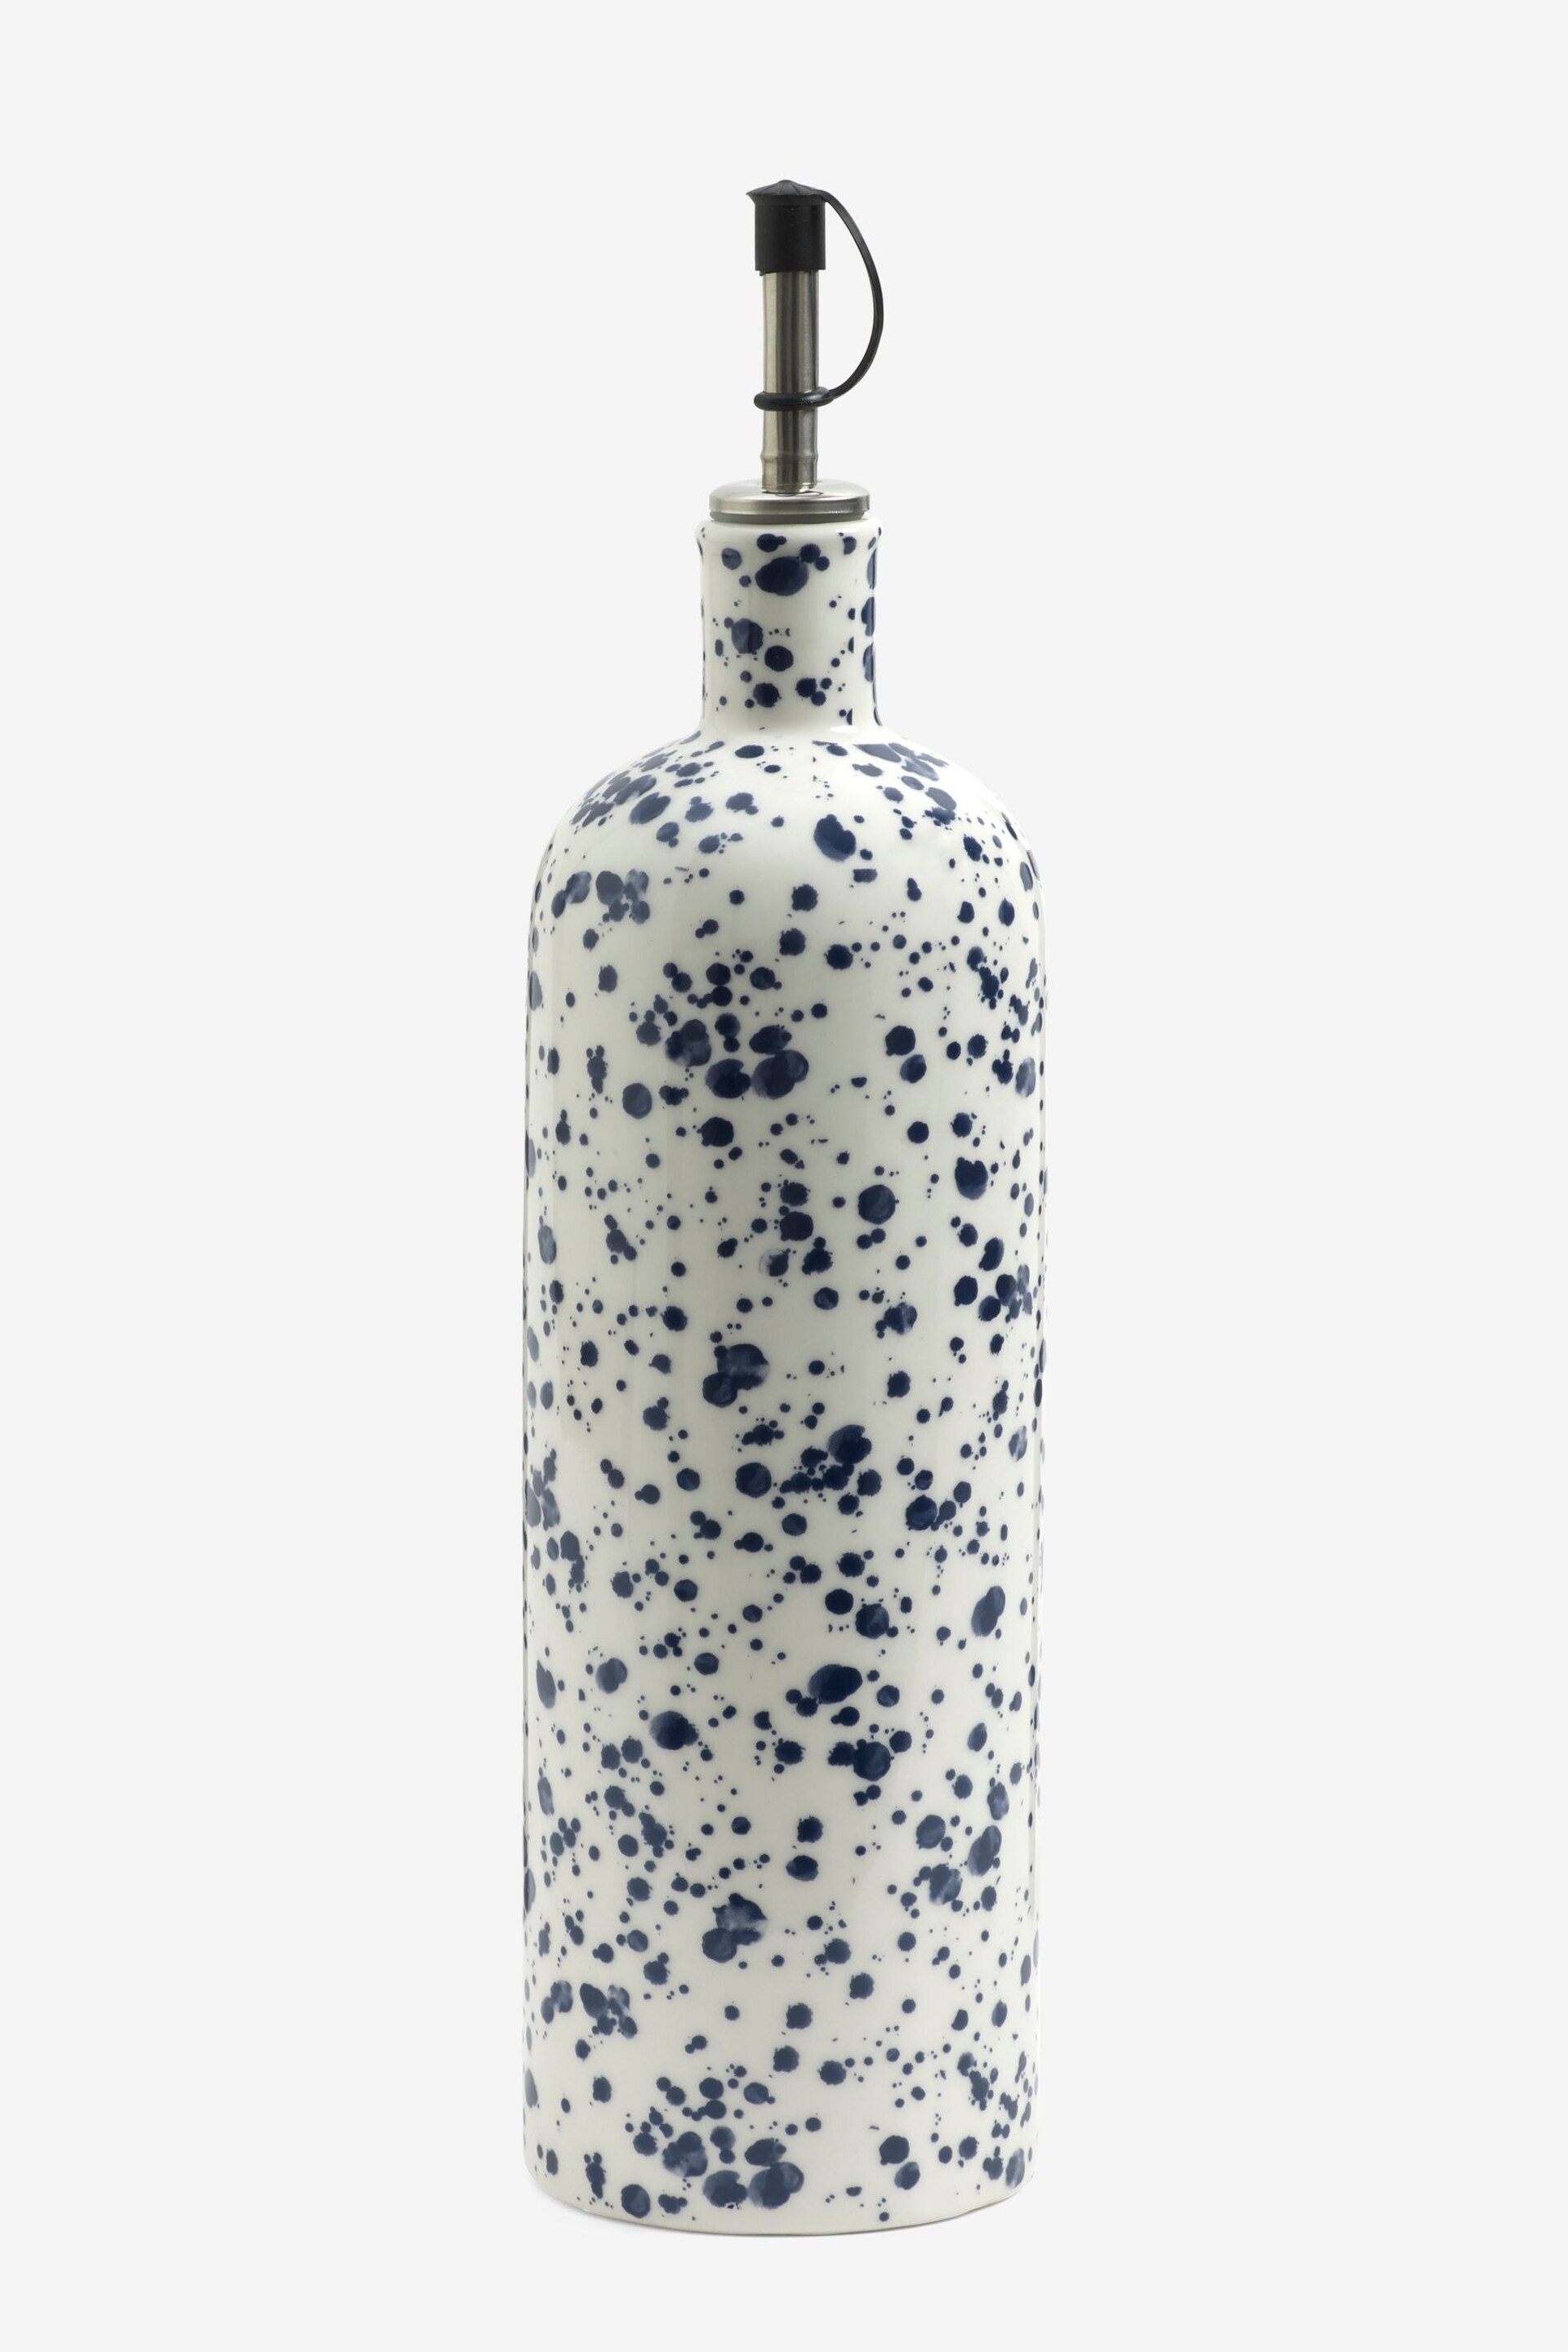 Blue Speckle Large Oil Bottle - Image 4 of 4